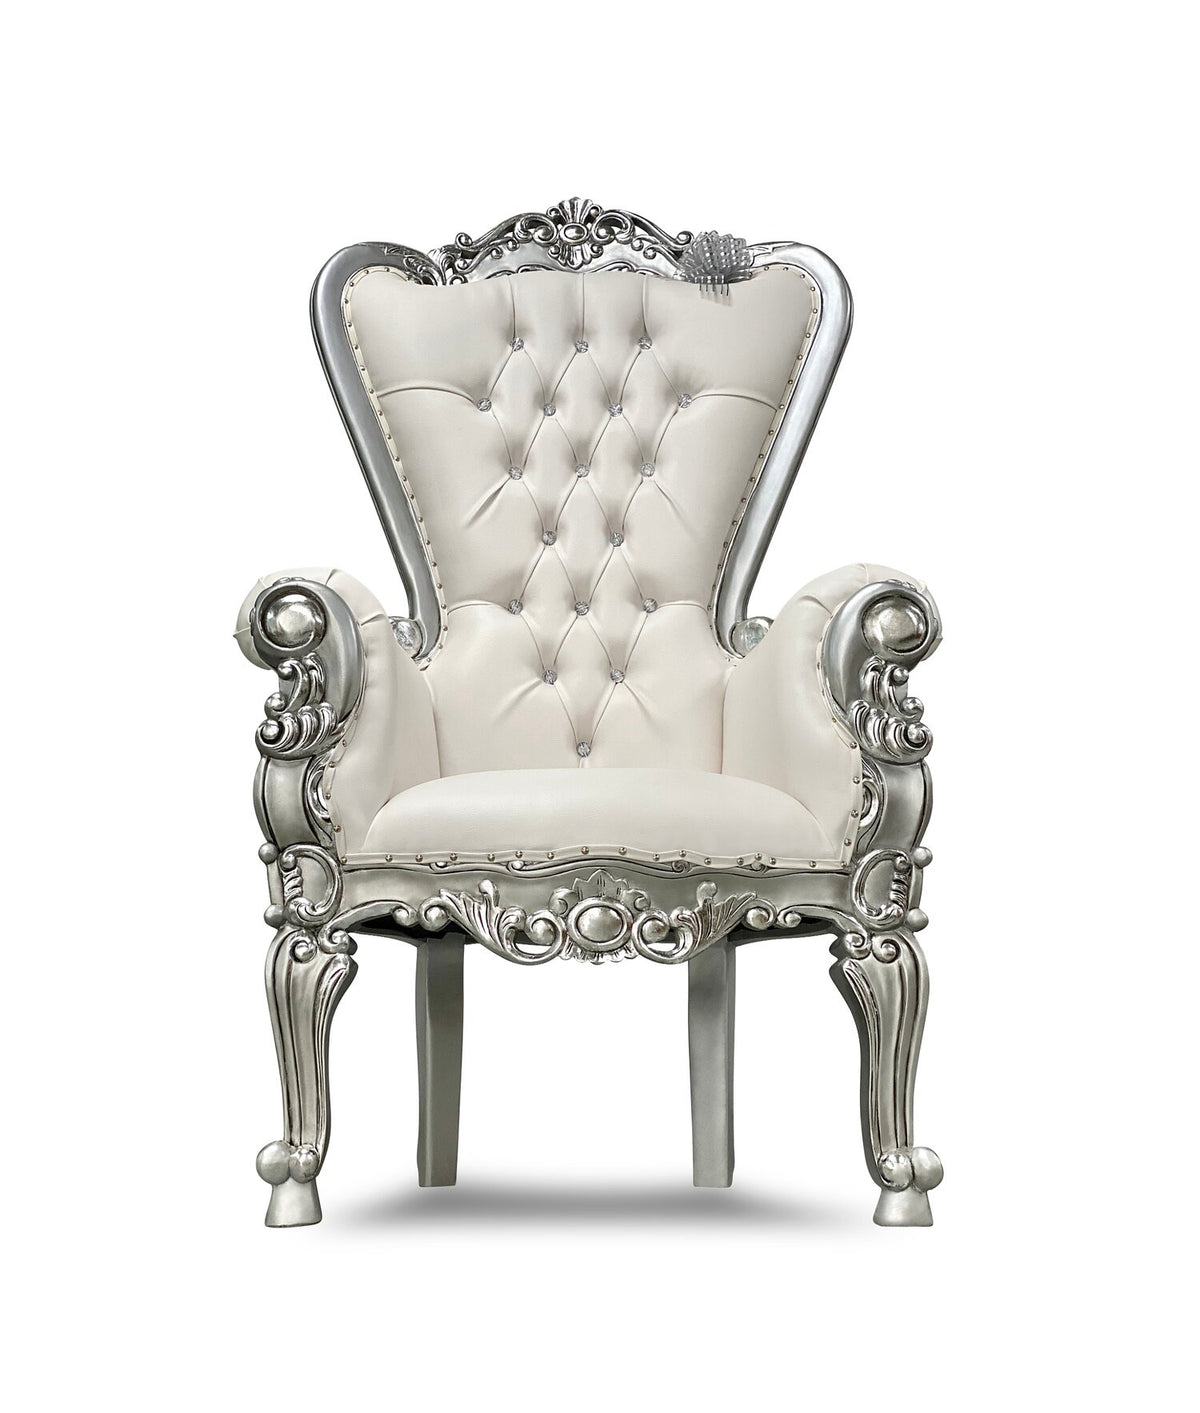 White/Silver Royal Throne Chair